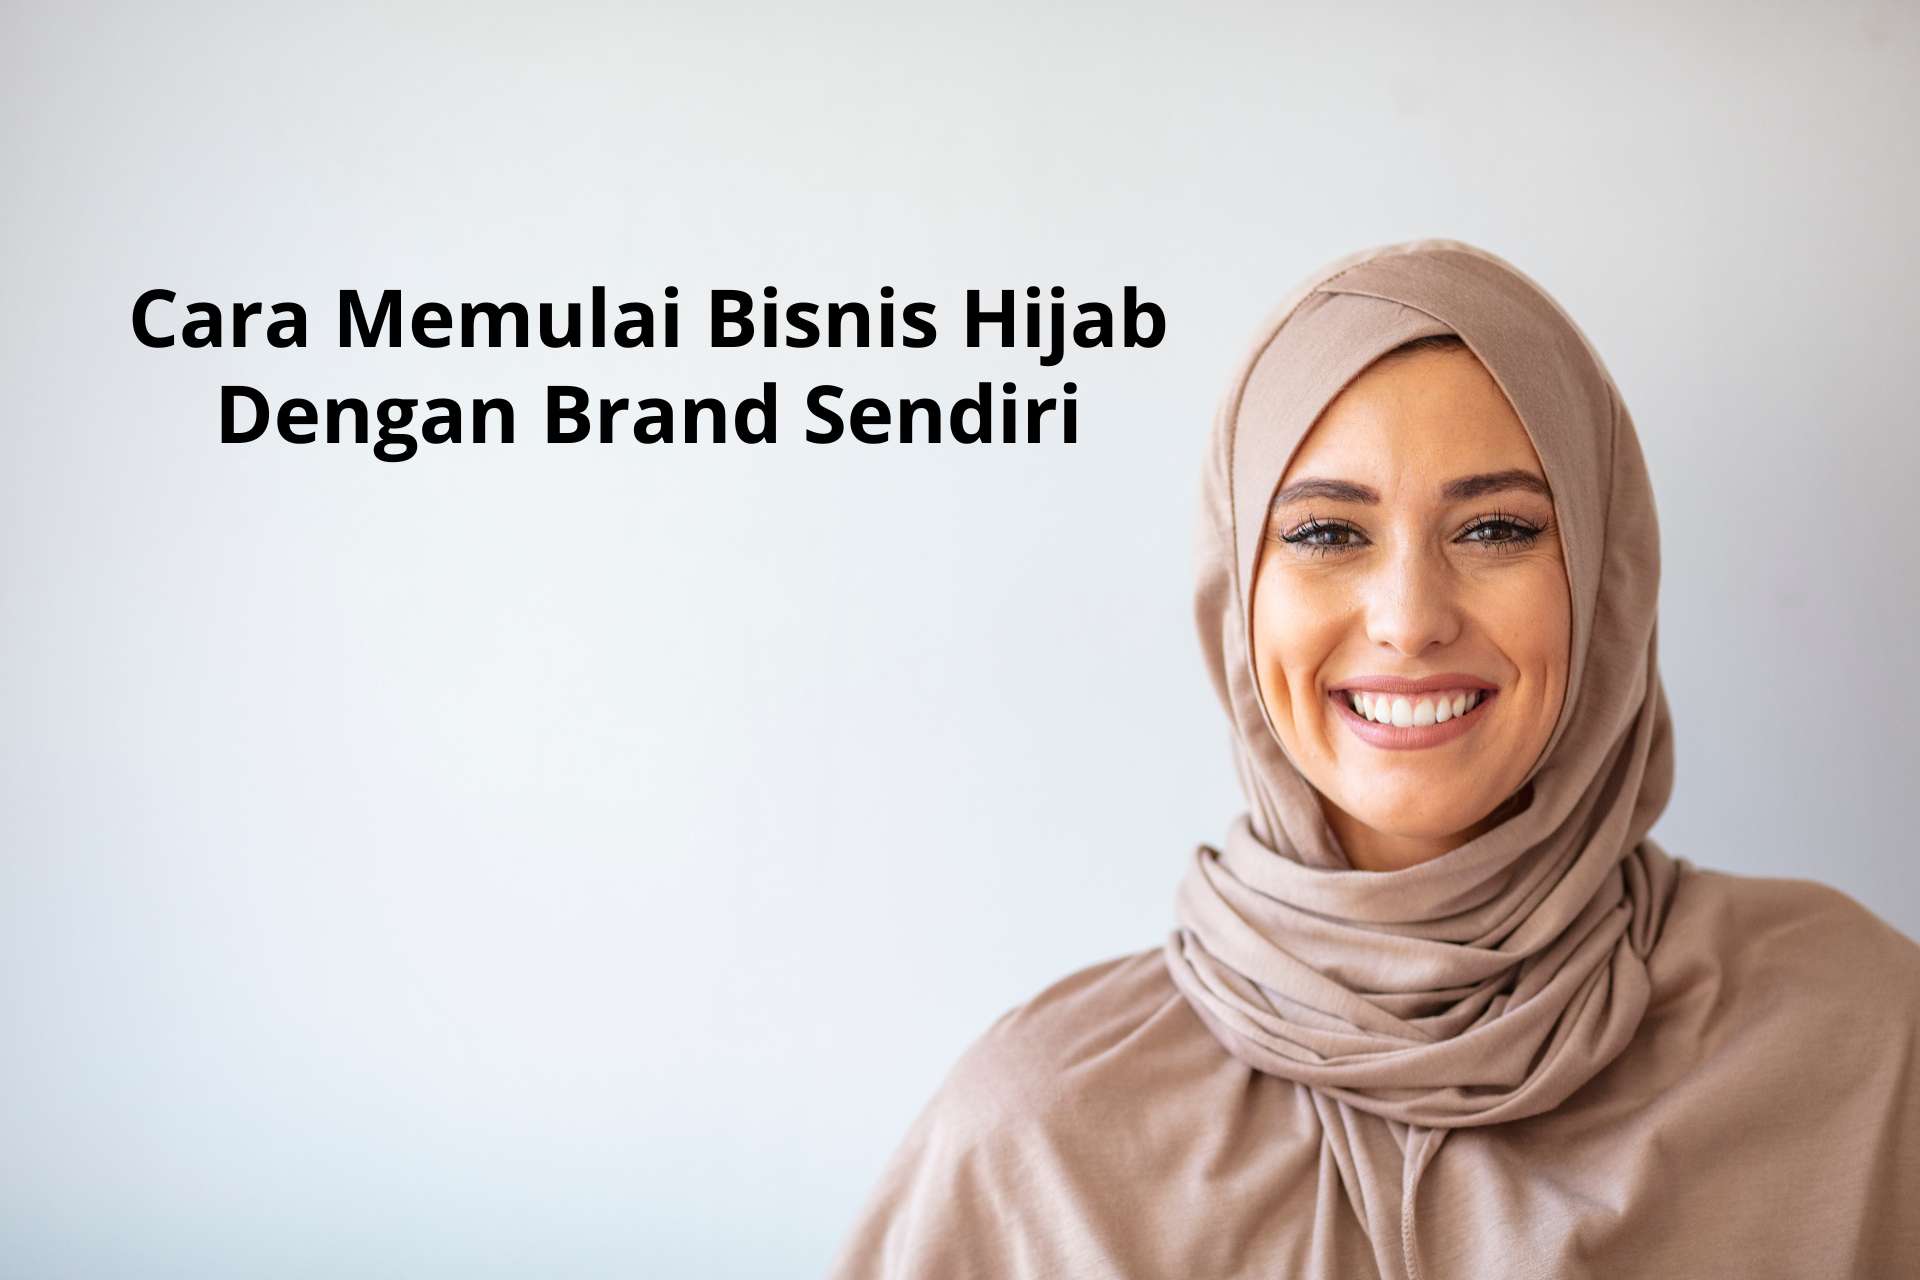 Cara Memulai Bisnis Hijab Dengan Brand Sendiri